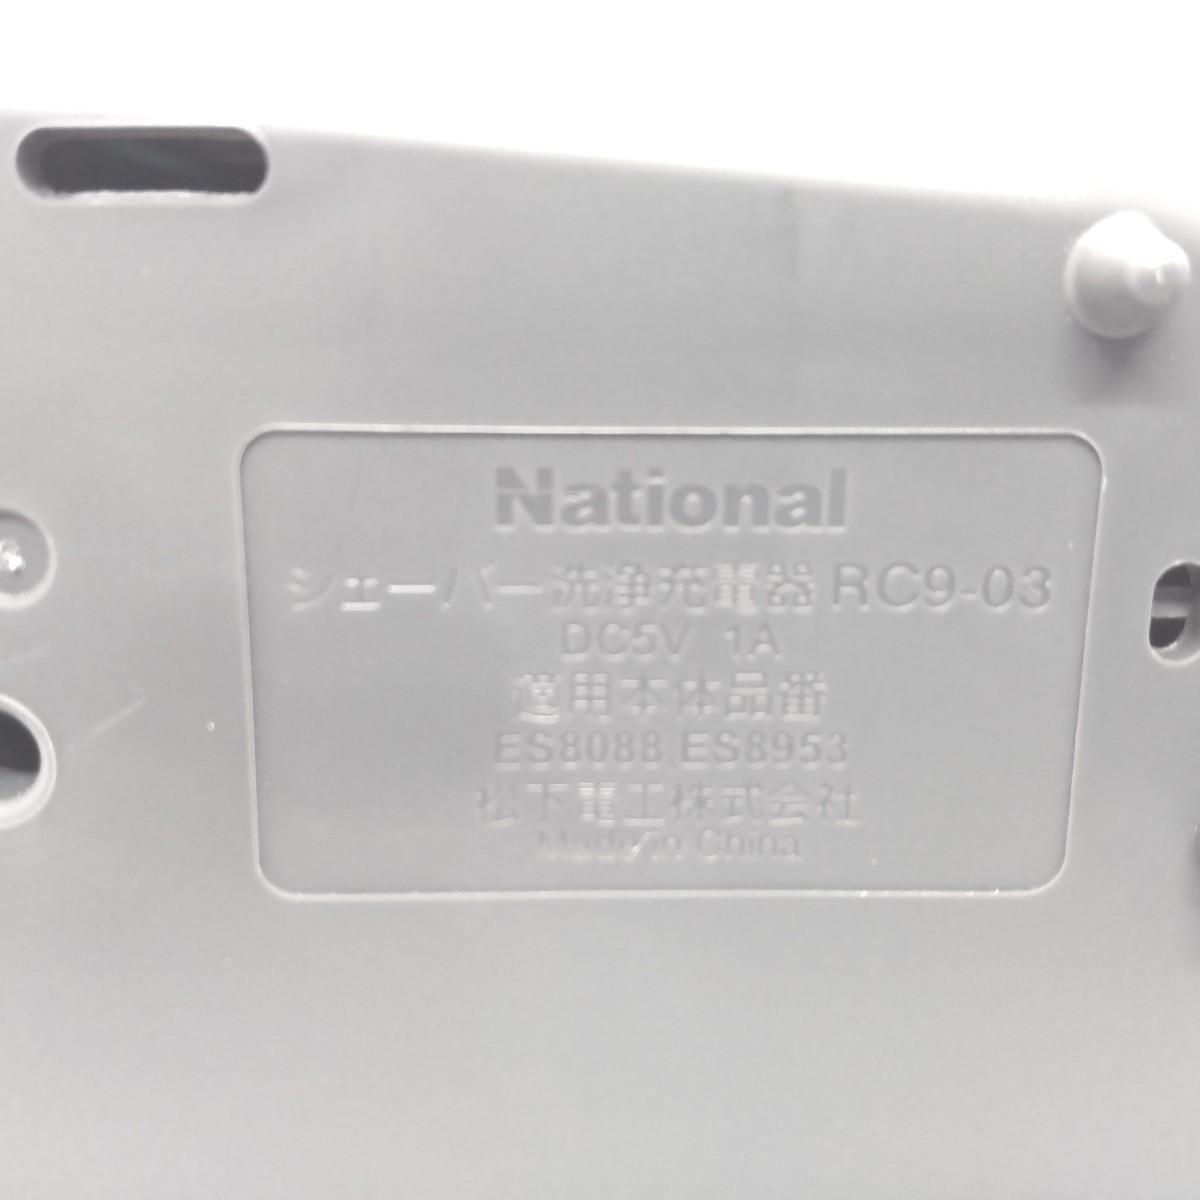 National シェーバー洗浄充電器 RC9-03 ＆ 洗浄剤